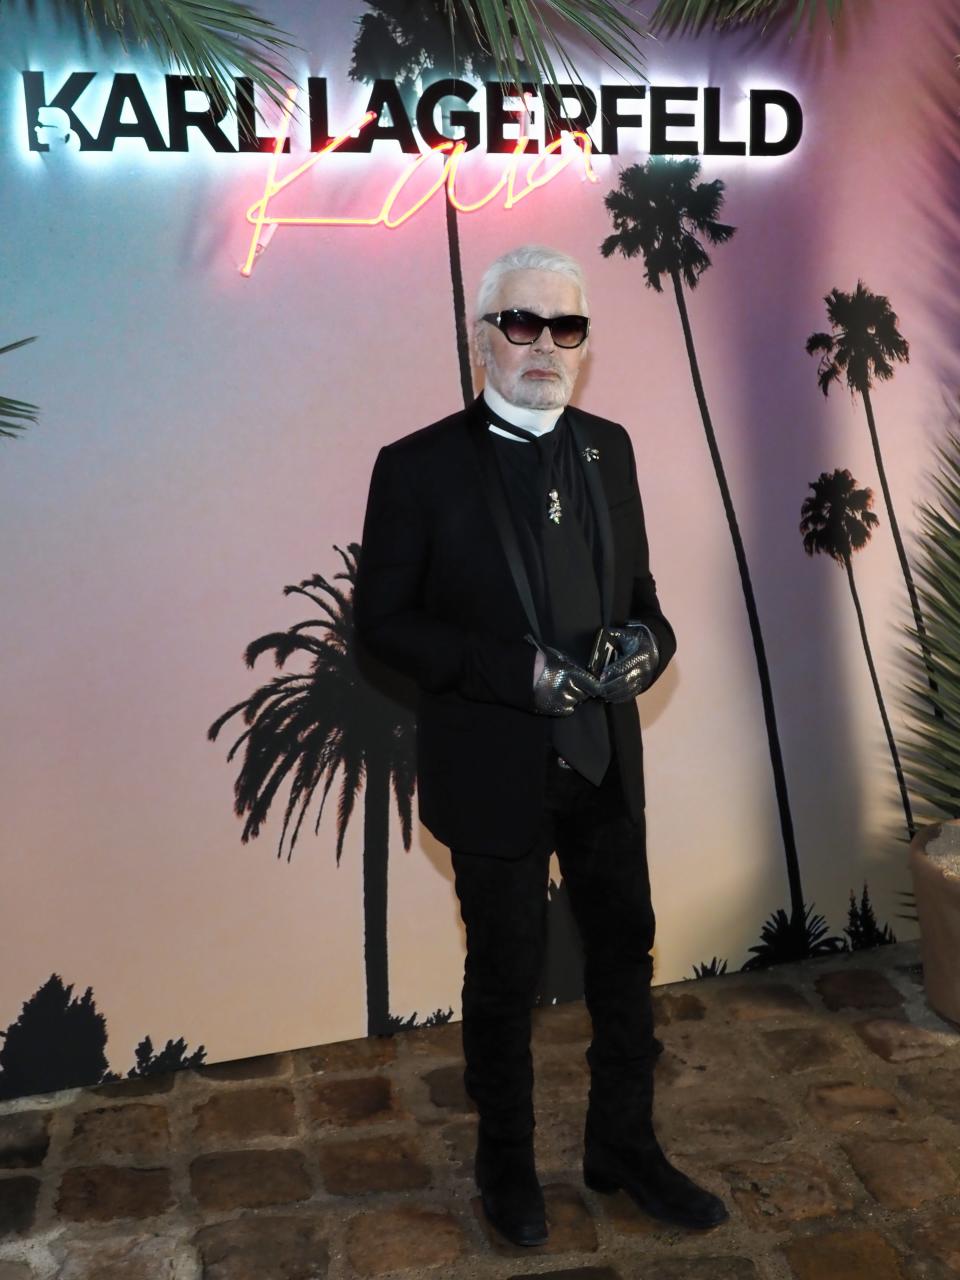 Who Is Karl Lagerfeld? Death, Net Worth, Met Gala Legacy